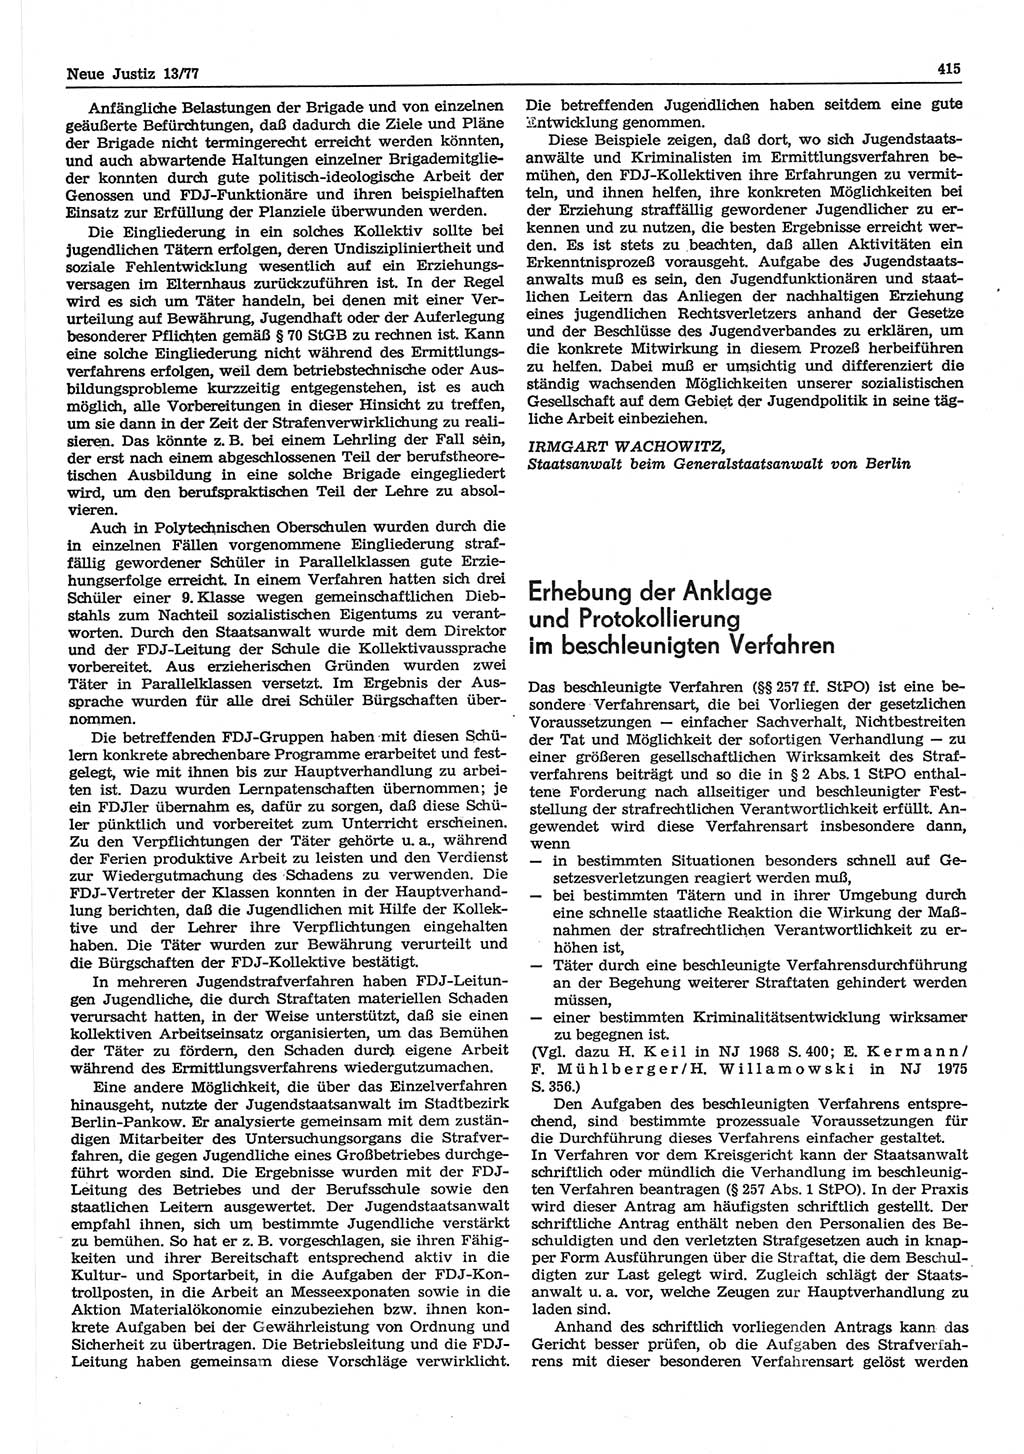 Neue Justiz (NJ), Zeitschrift für Recht und Rechtswissenschaft-Zeitschrift, sozialistisches Recht und Gesetzlichkeit, 31. Jahrgang 1977, Seite 415 (NJ DDR 1977, S. 415)